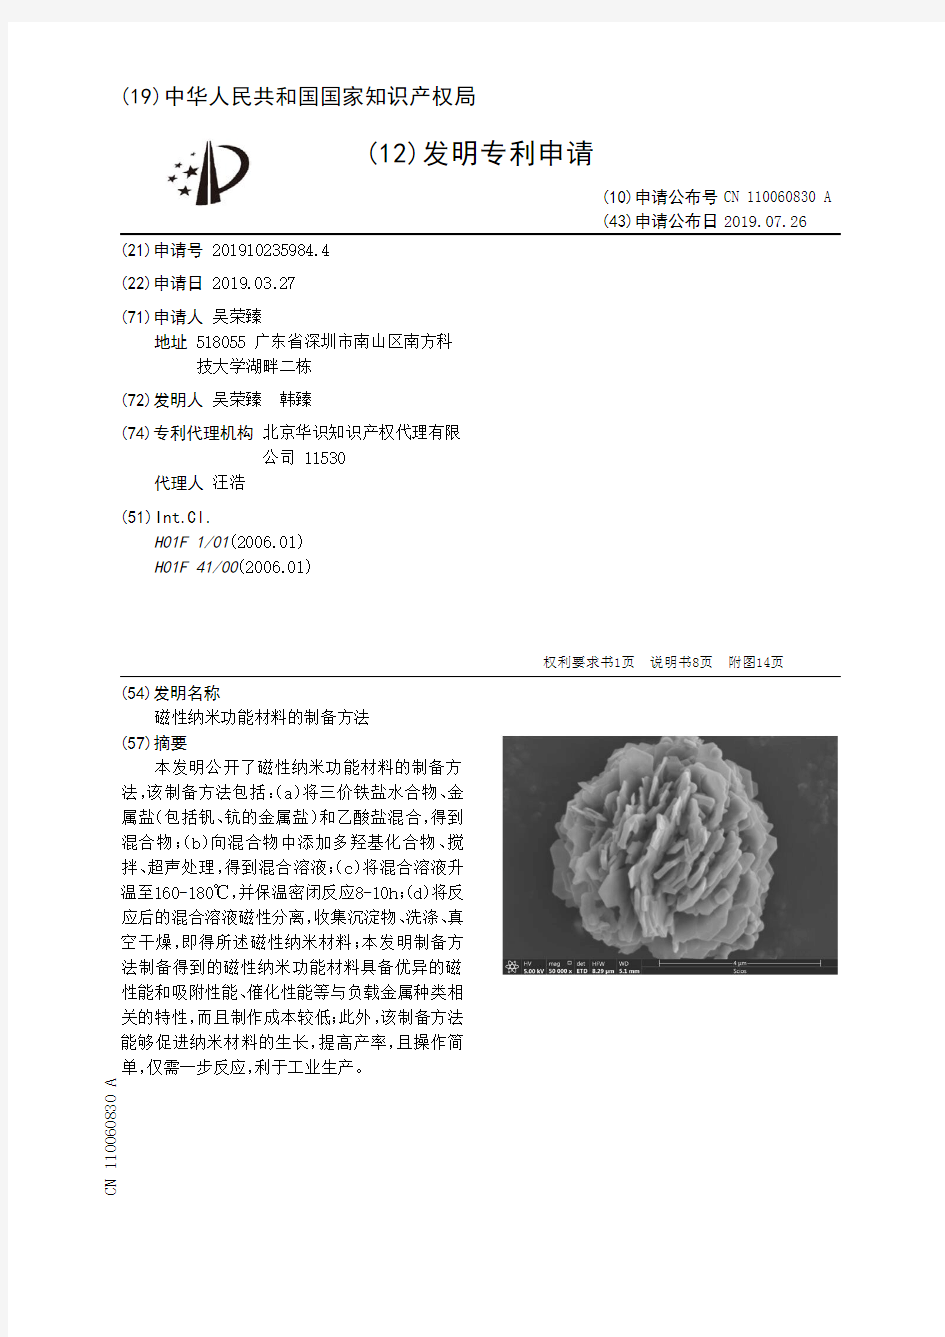 【CN110060830A】磁性纳米功能材料的制备方法【专利】